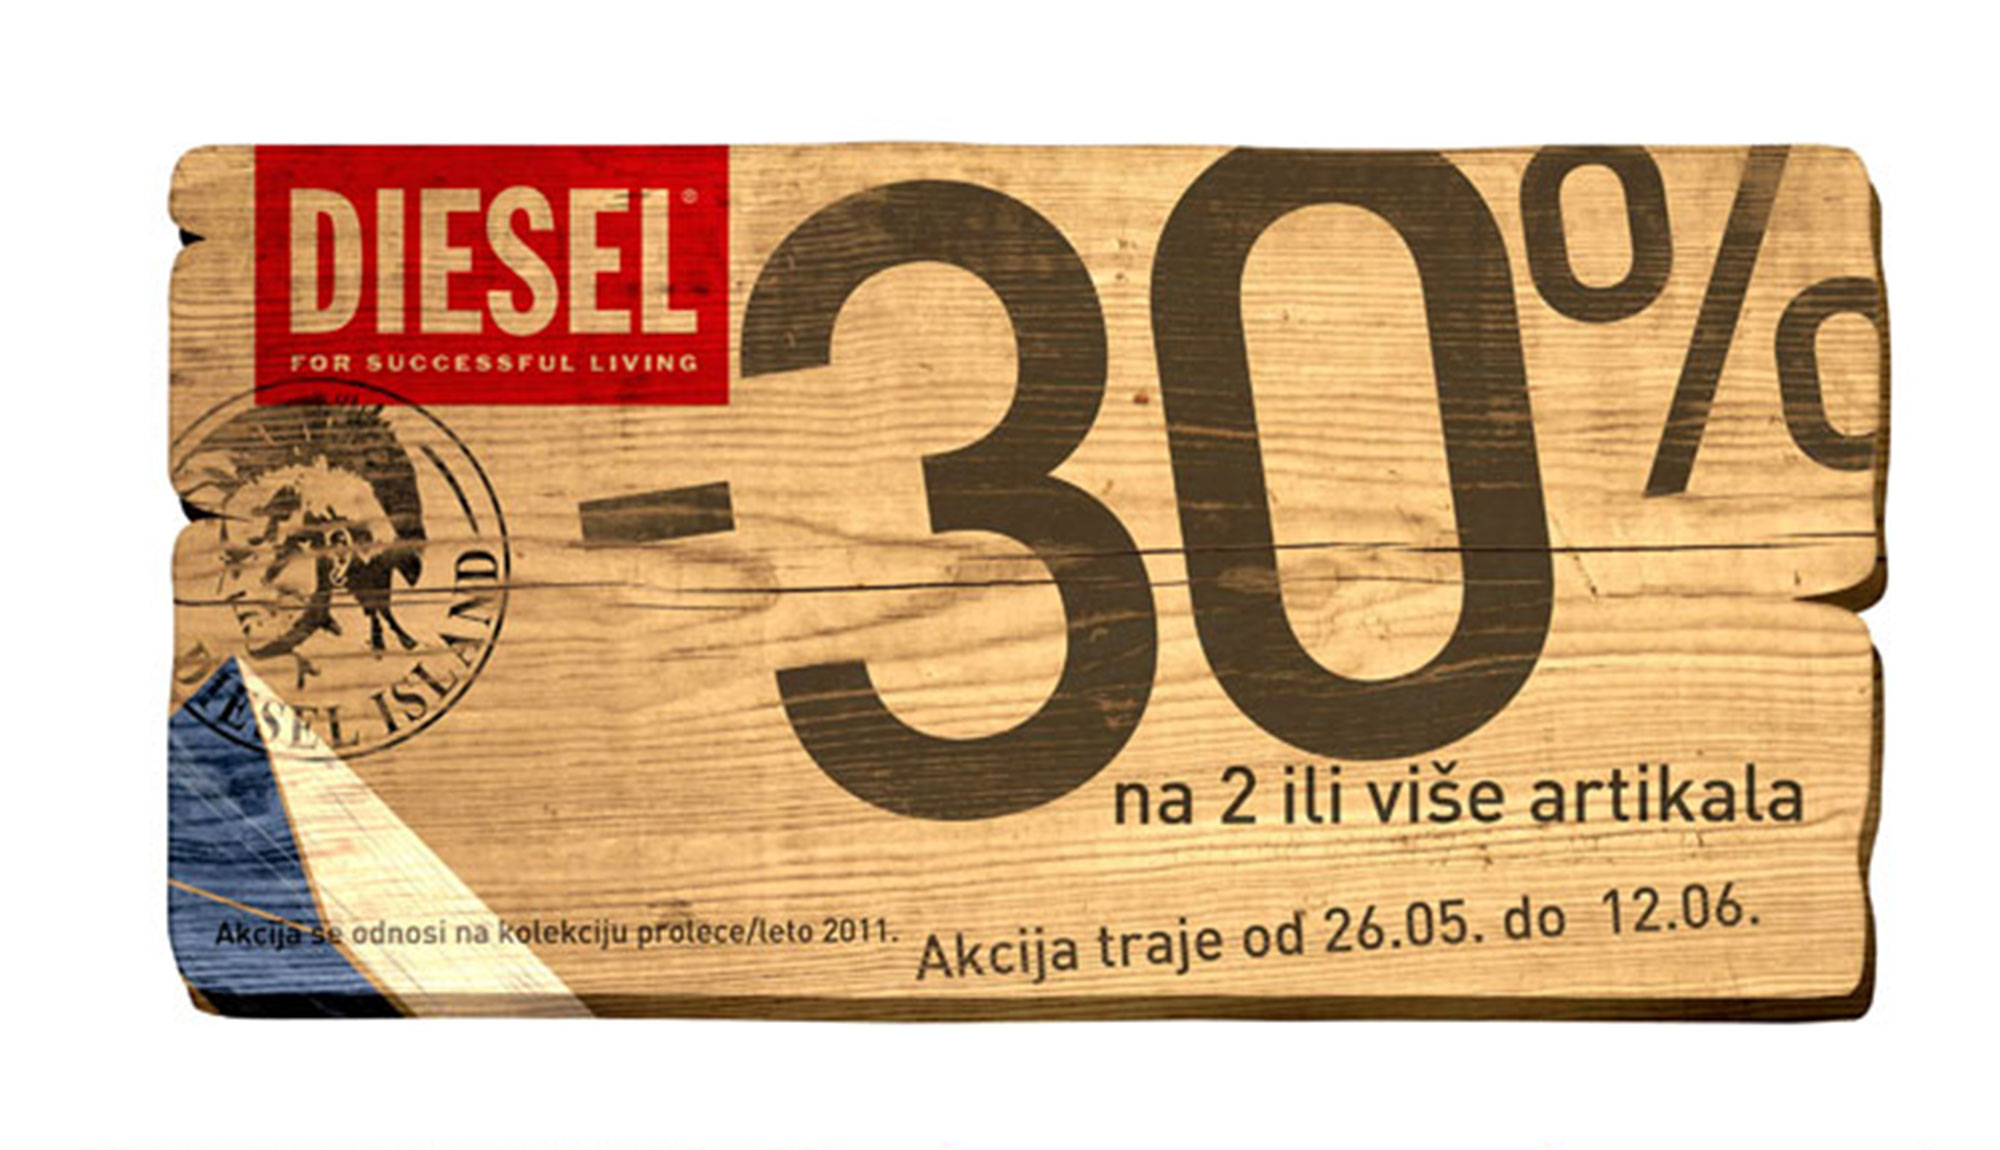 diesel sale